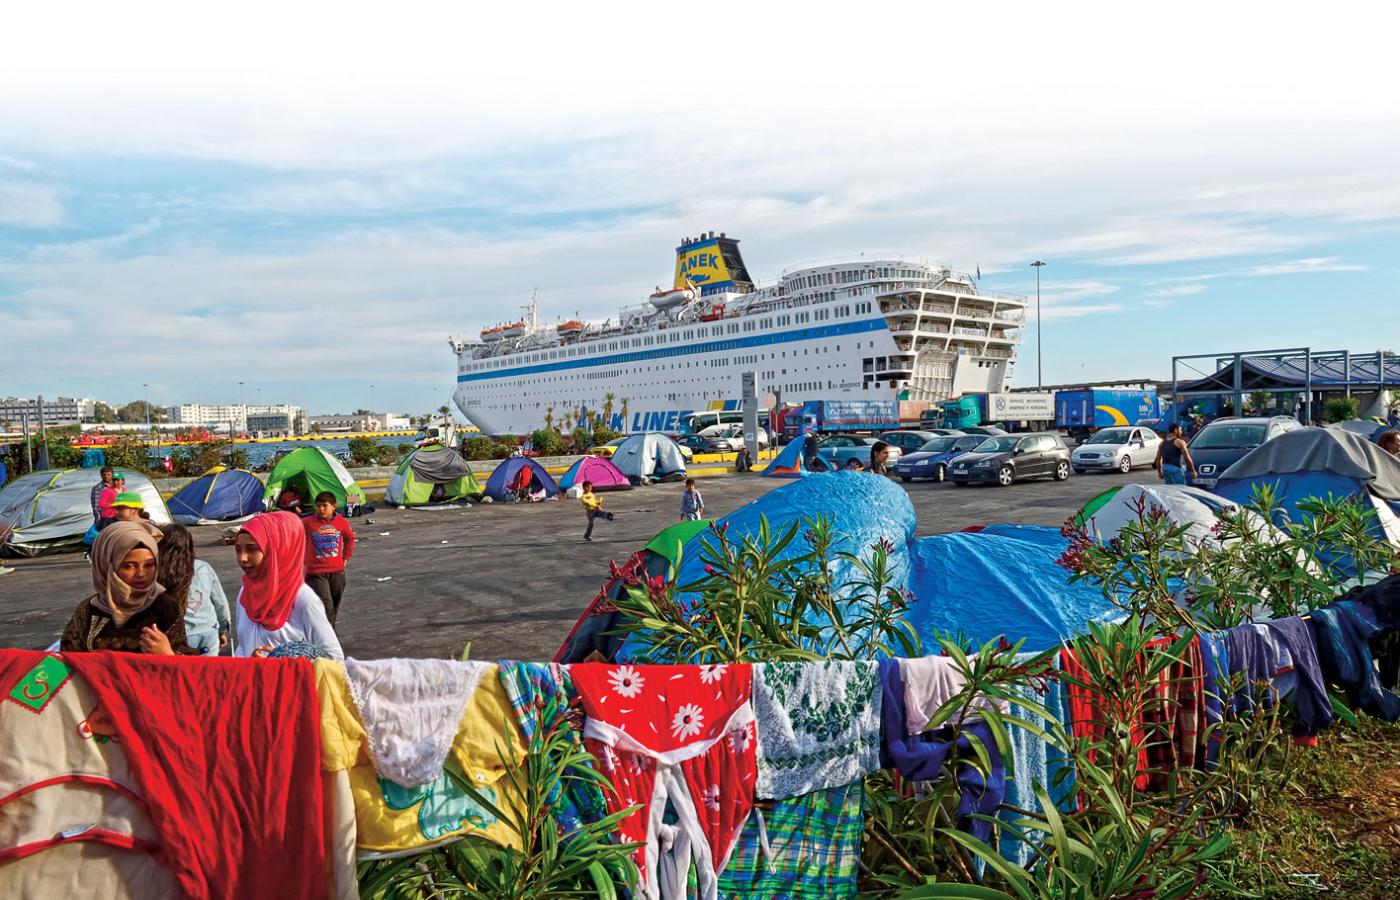 W porcie w Pireusie nadal koczują tysiące uchodźców. Polscy turyści na ogół nie chcą oglądać takich widoków.